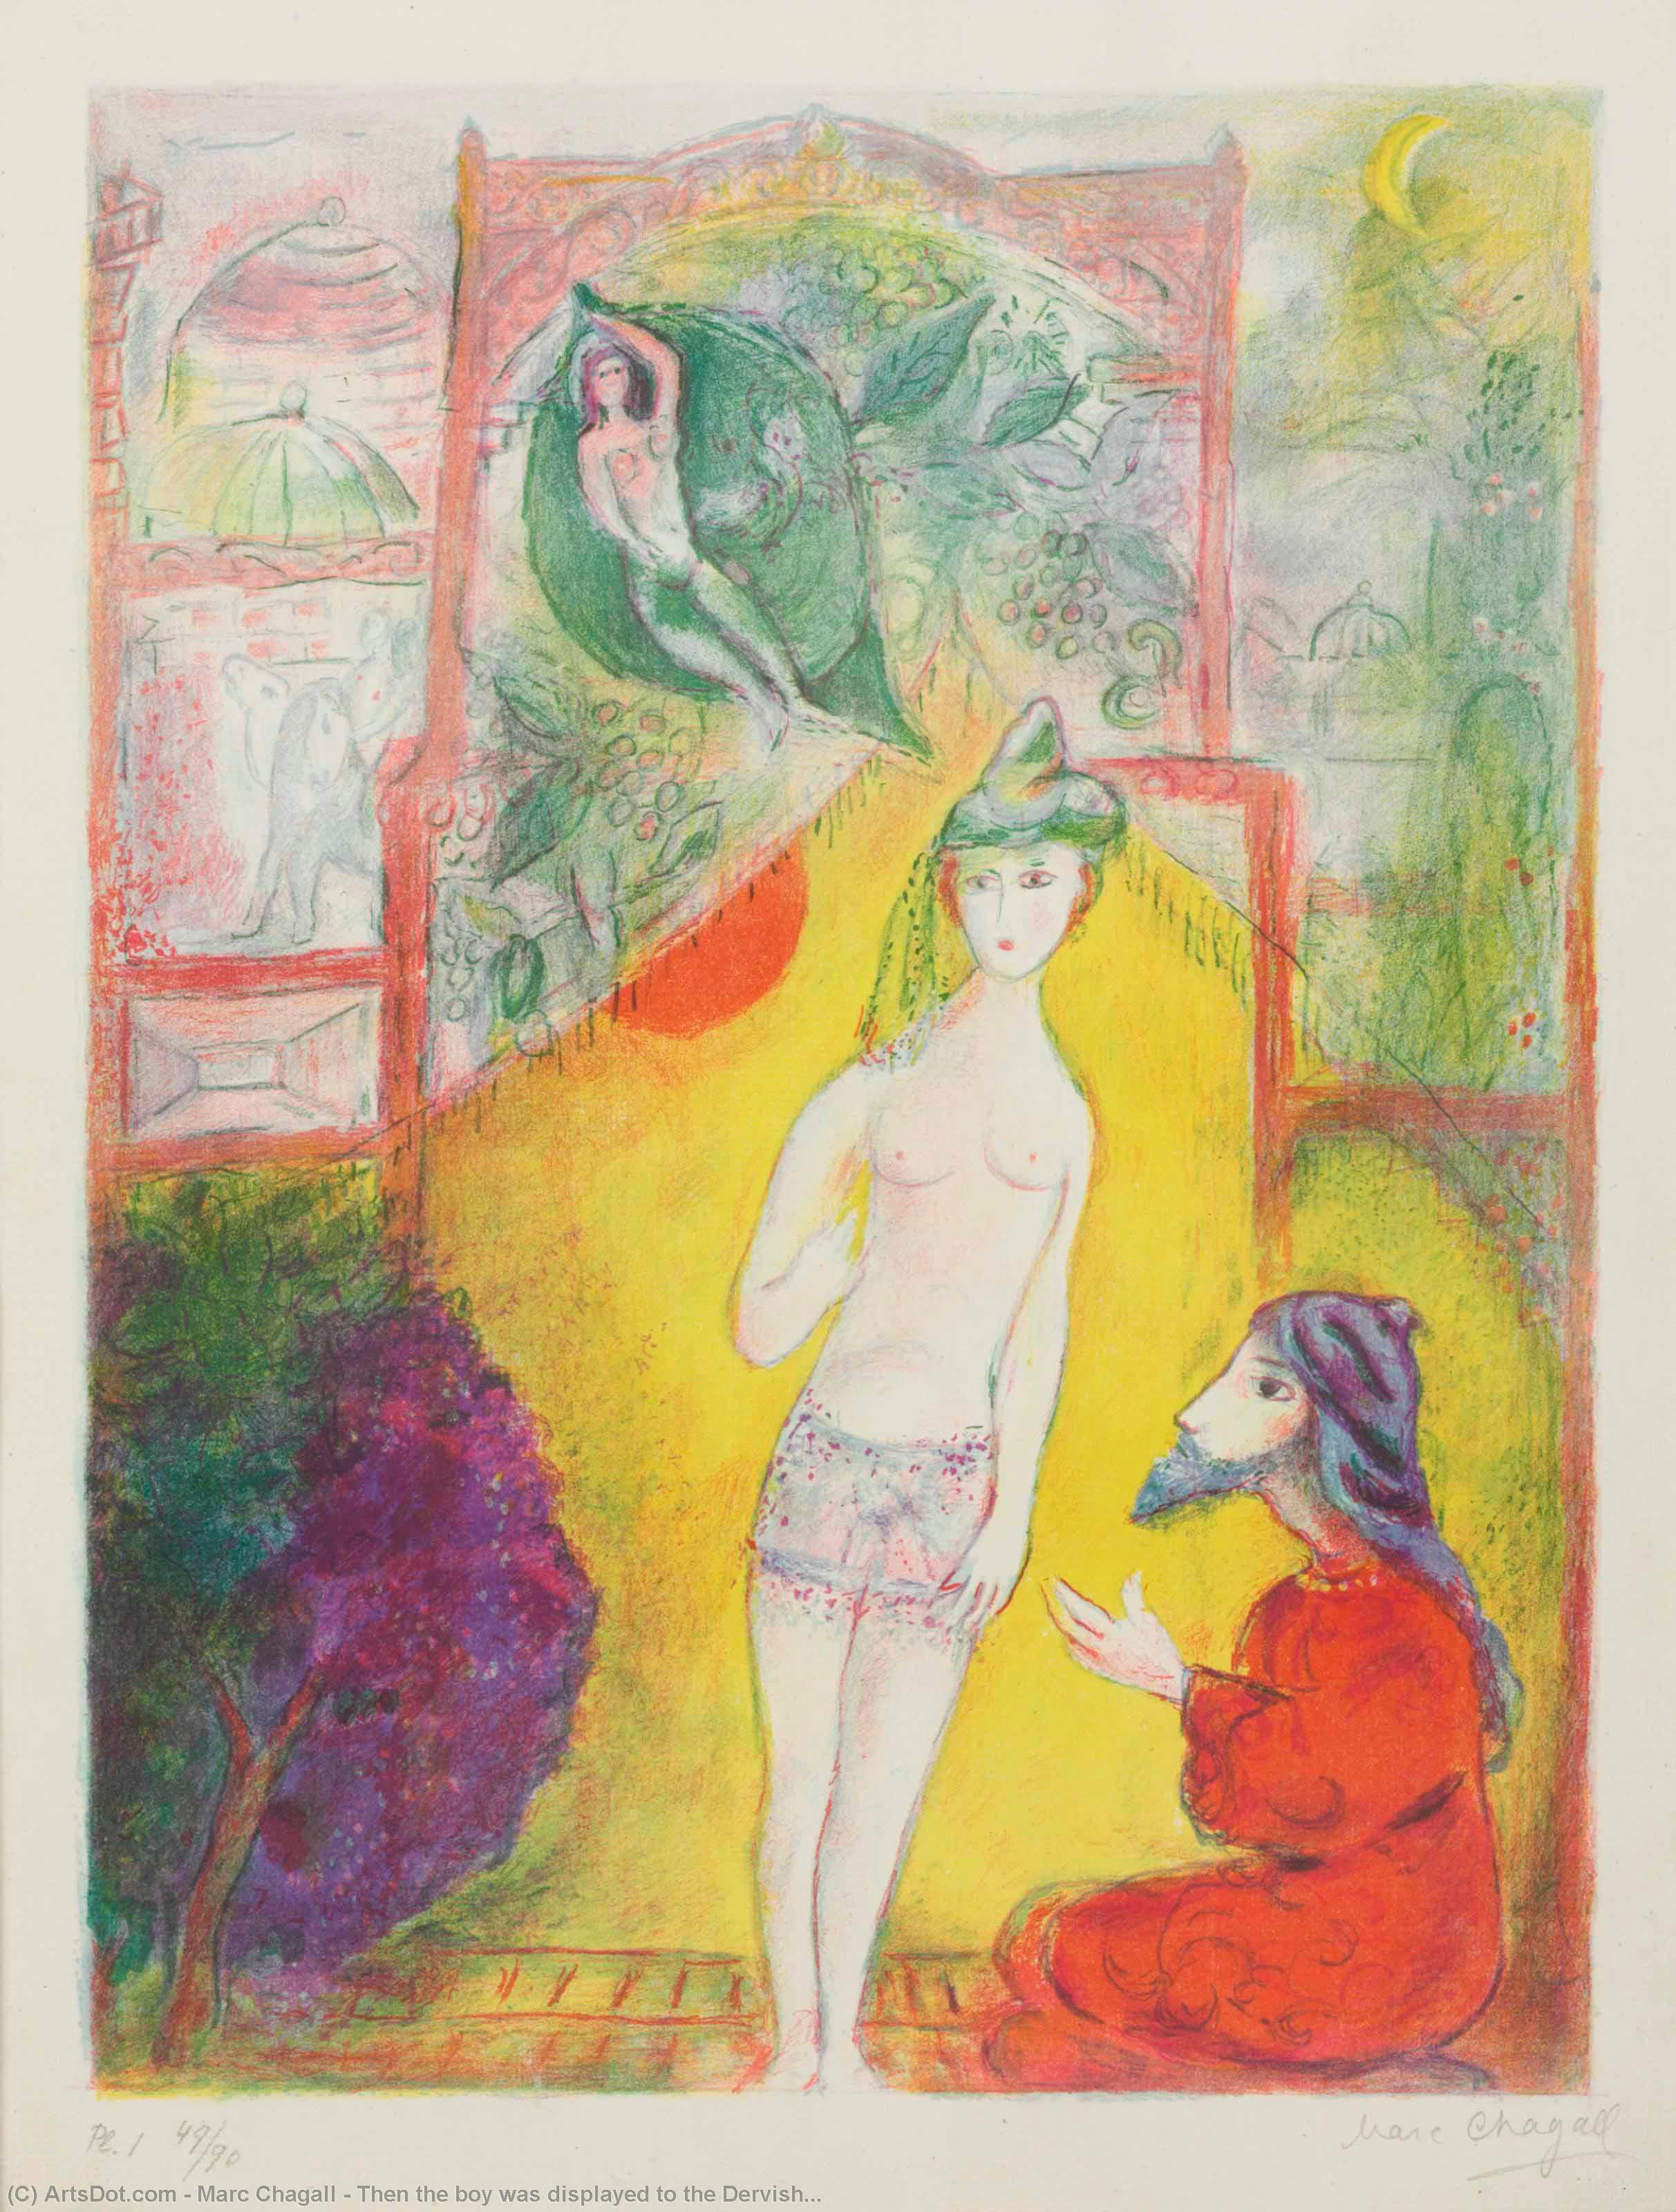 WikiOO.org - Εγκυκλοπαίδεια Καλών Τεχνών - Ζωγραφική, έργα τέχνης Marc Chagall - Then the boy was displayed to the Dervish...